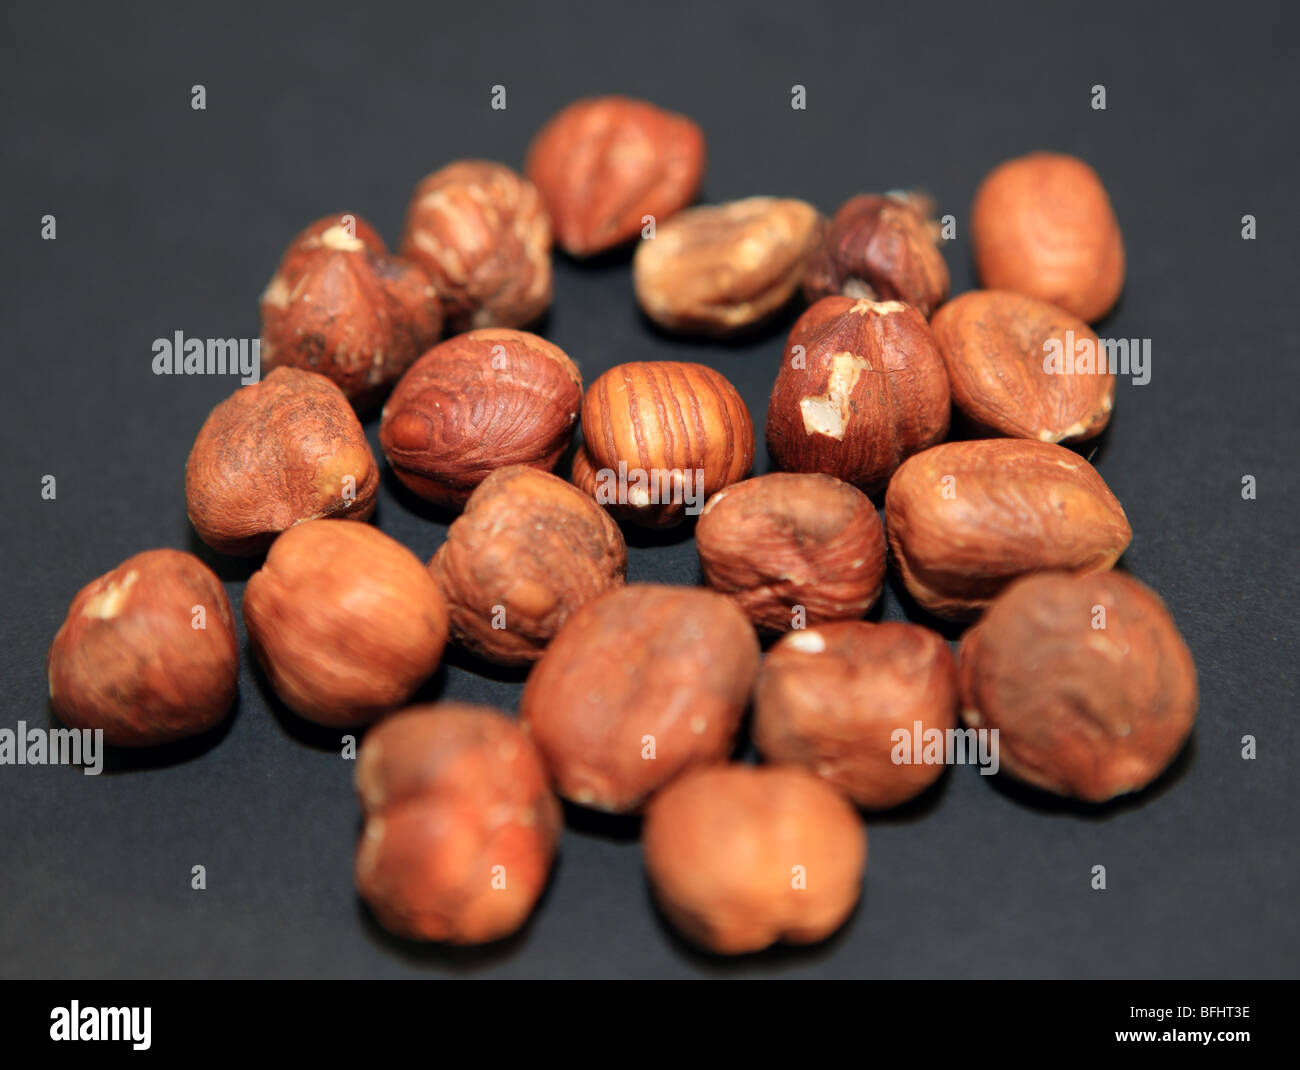 Hazelnuts on a black background Stock Photo